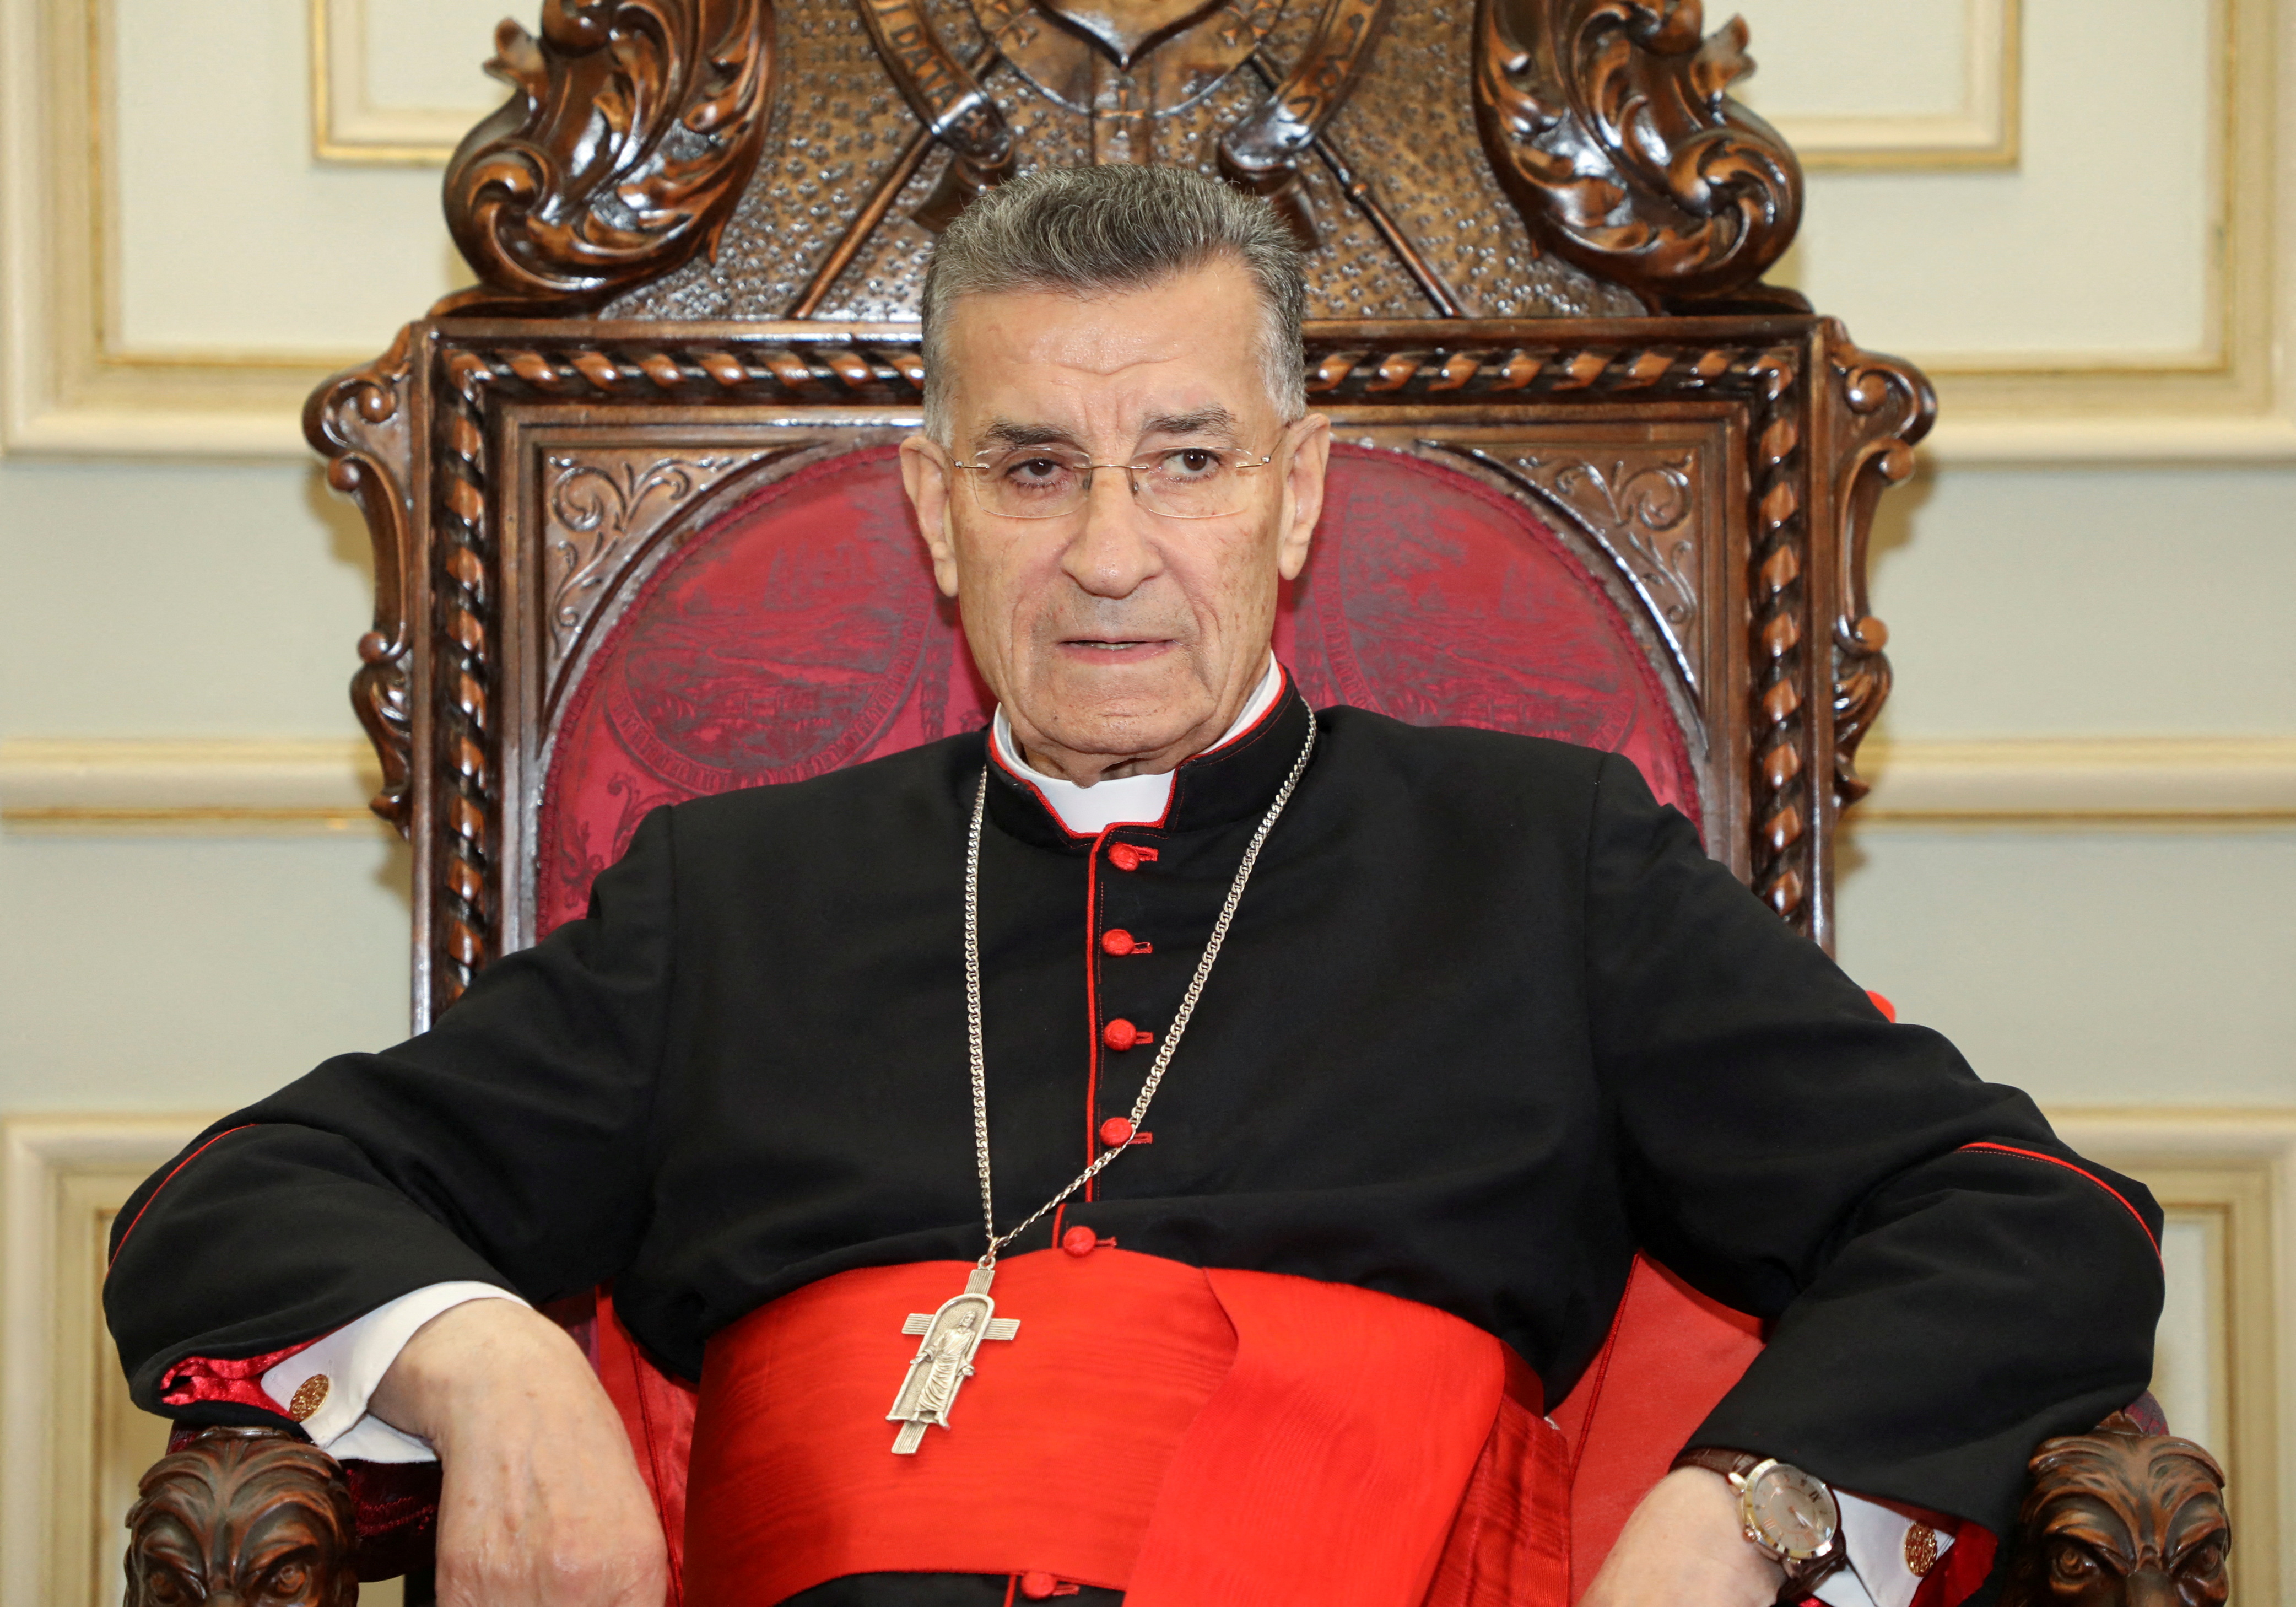 Maronite Patriarch Bechara Boutros Al-Rai is pictured